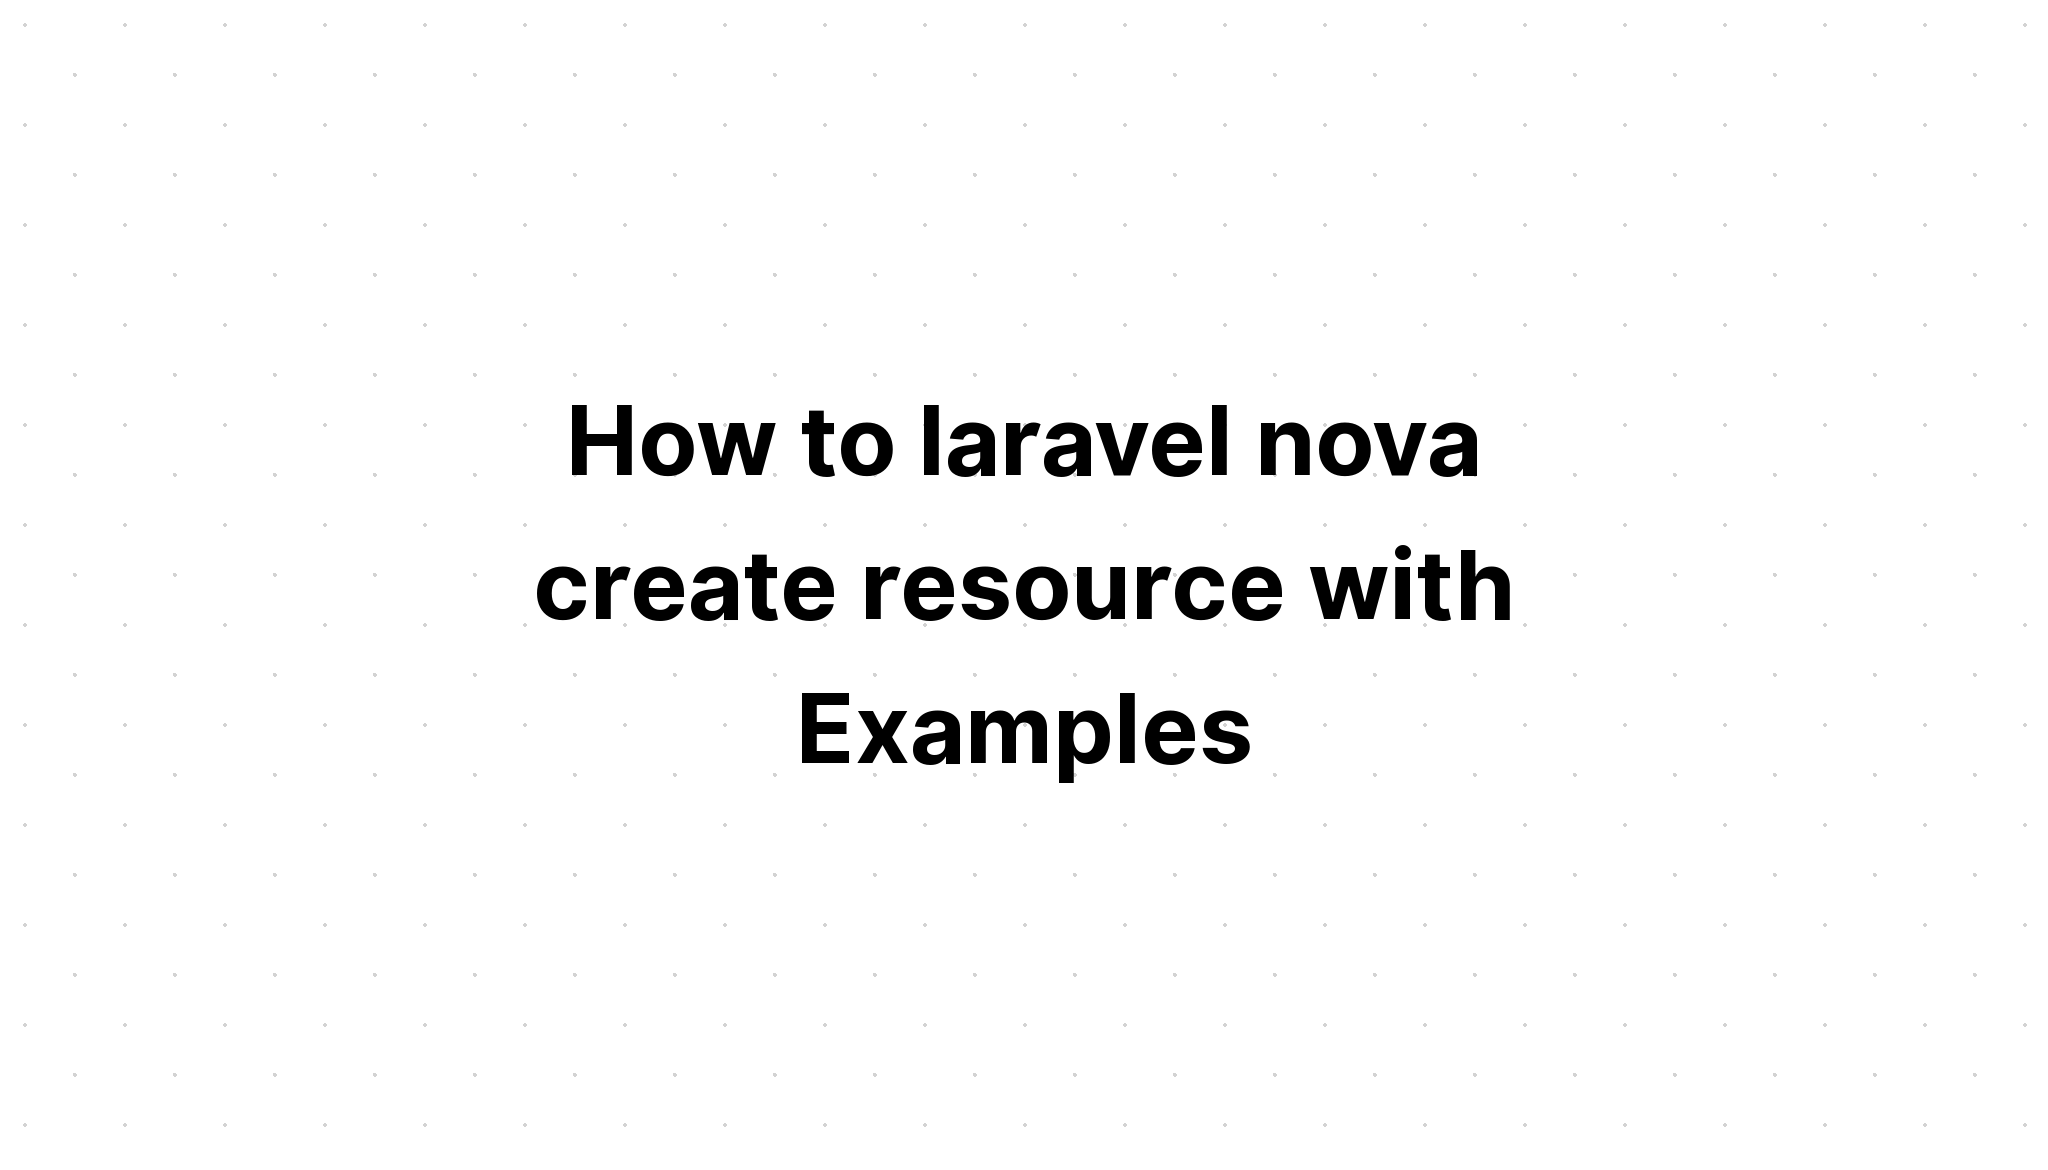 Cách tạo tài nguyên laravel nova với Ví dụ